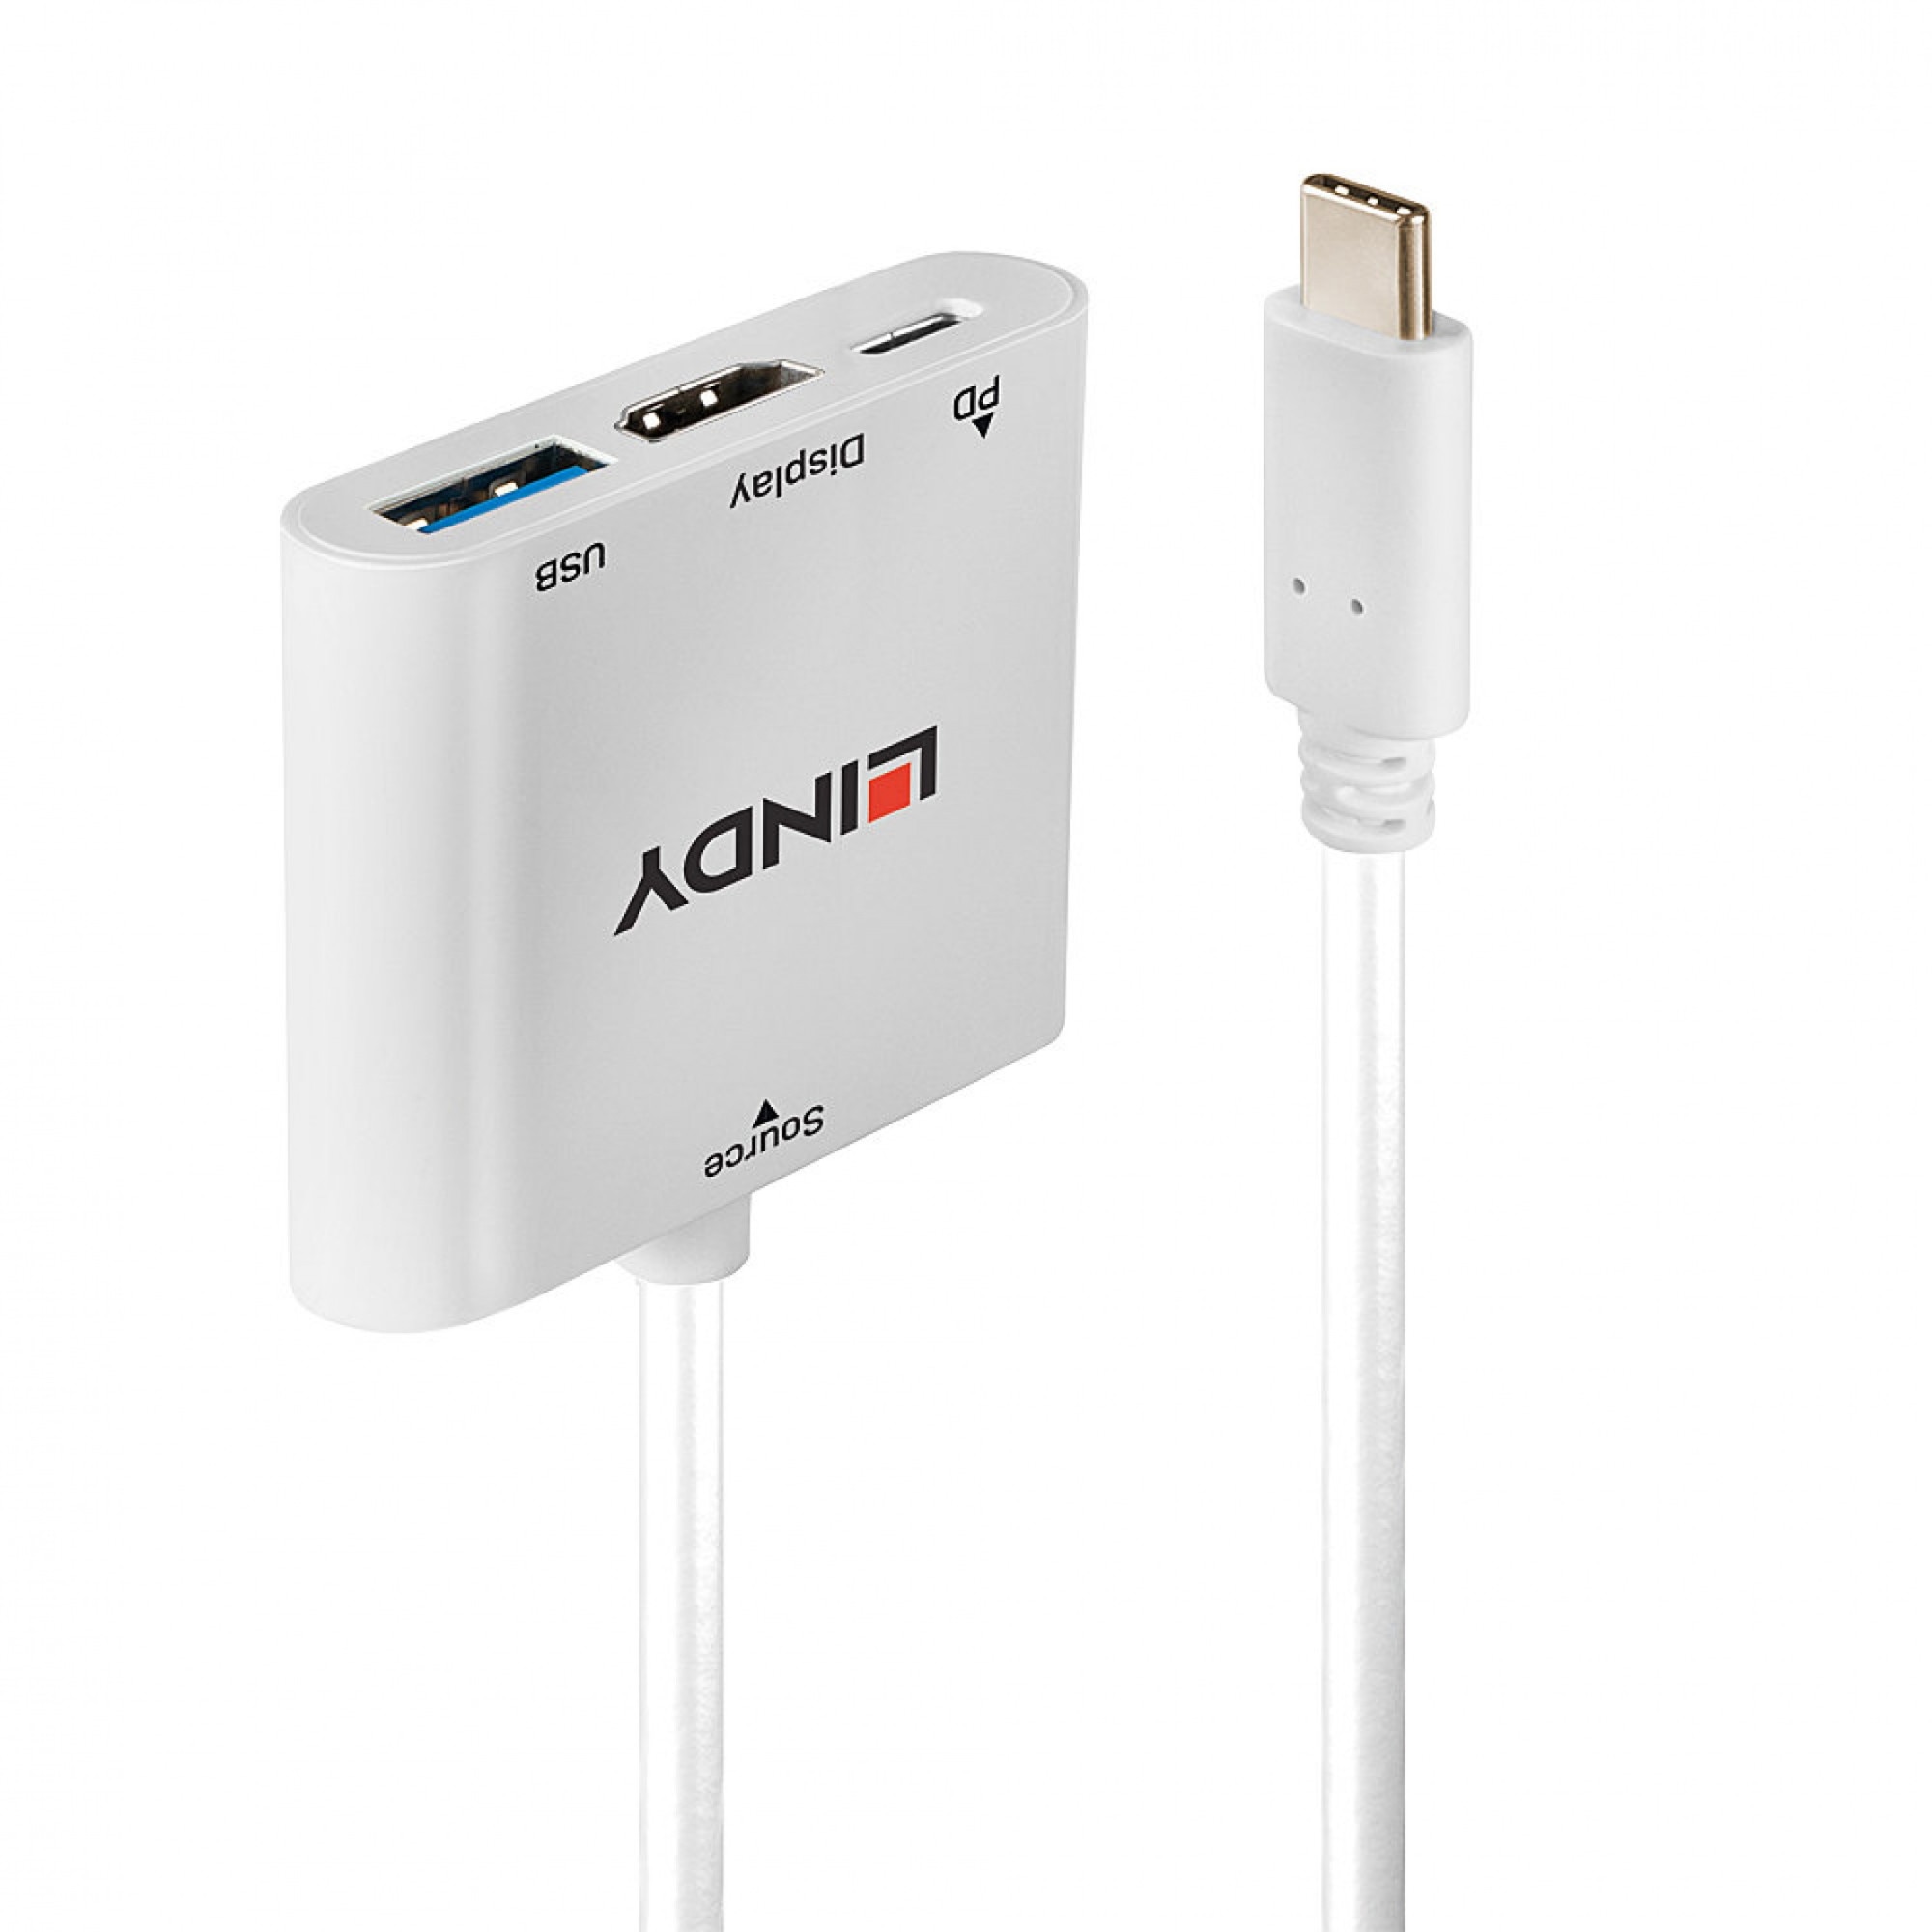 RVC-HI14C USB-C > HDMI 1.4 cable 1.8m